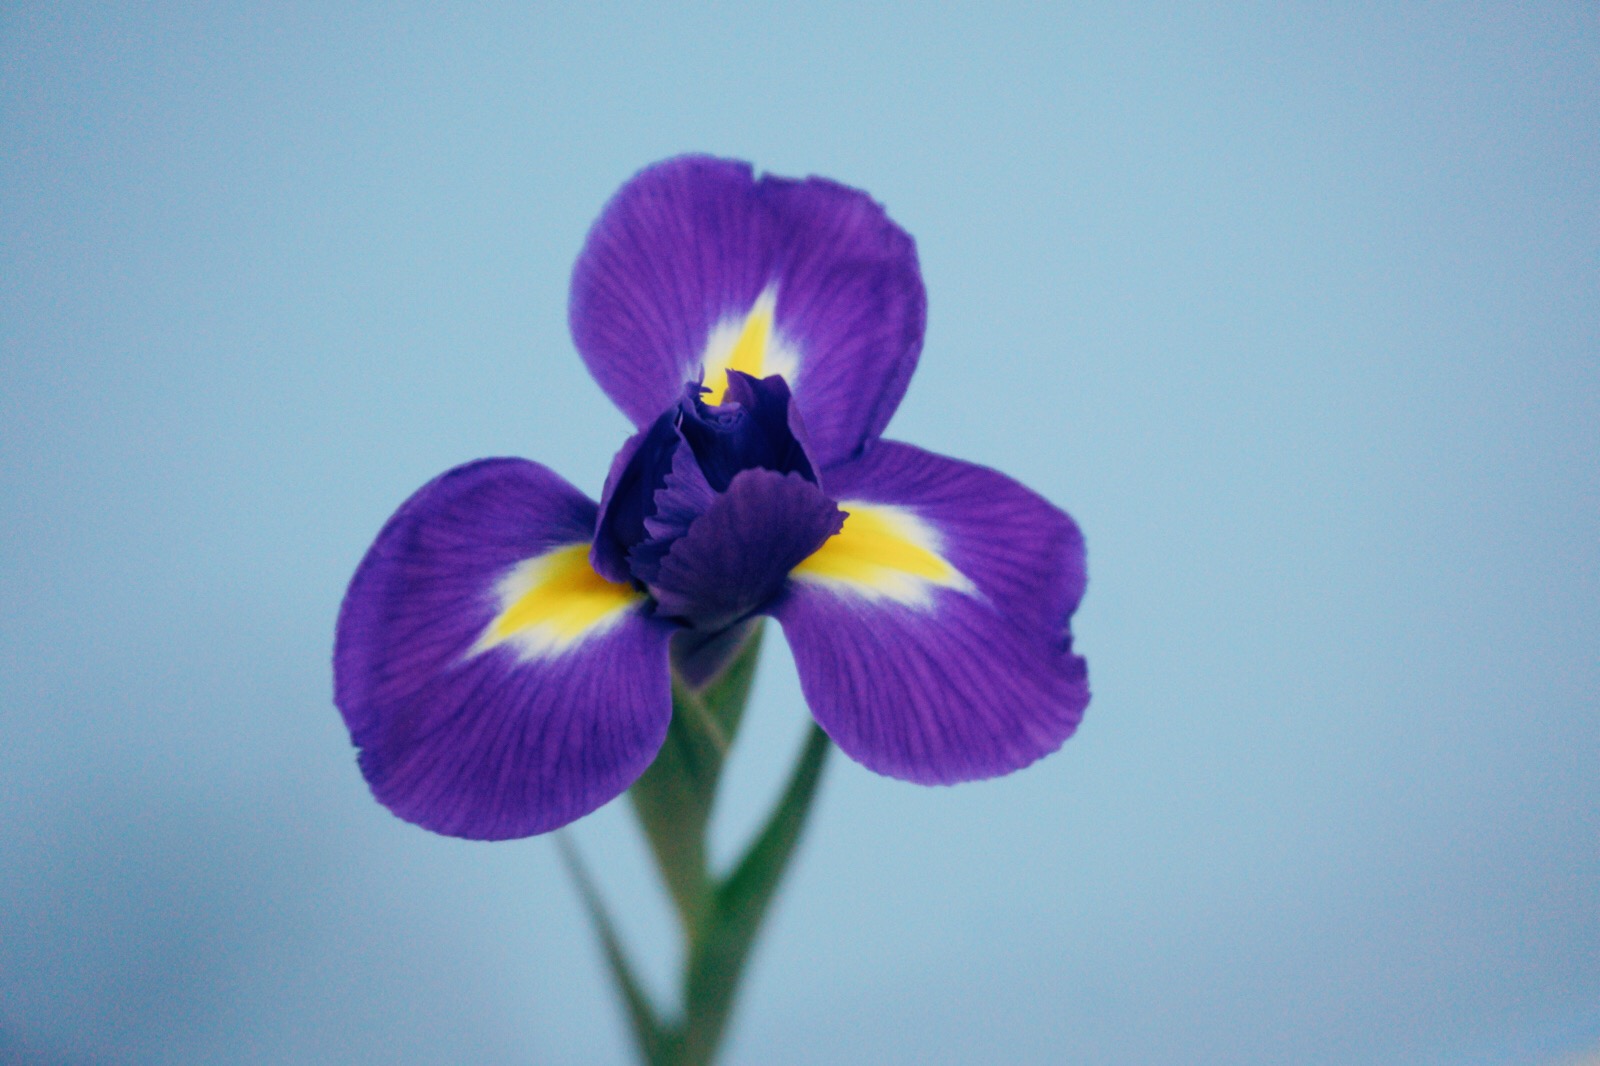 鸢尾iris tectorum 鸢尾科鸢尾属植物,多年生草本,法国国花,是一直都